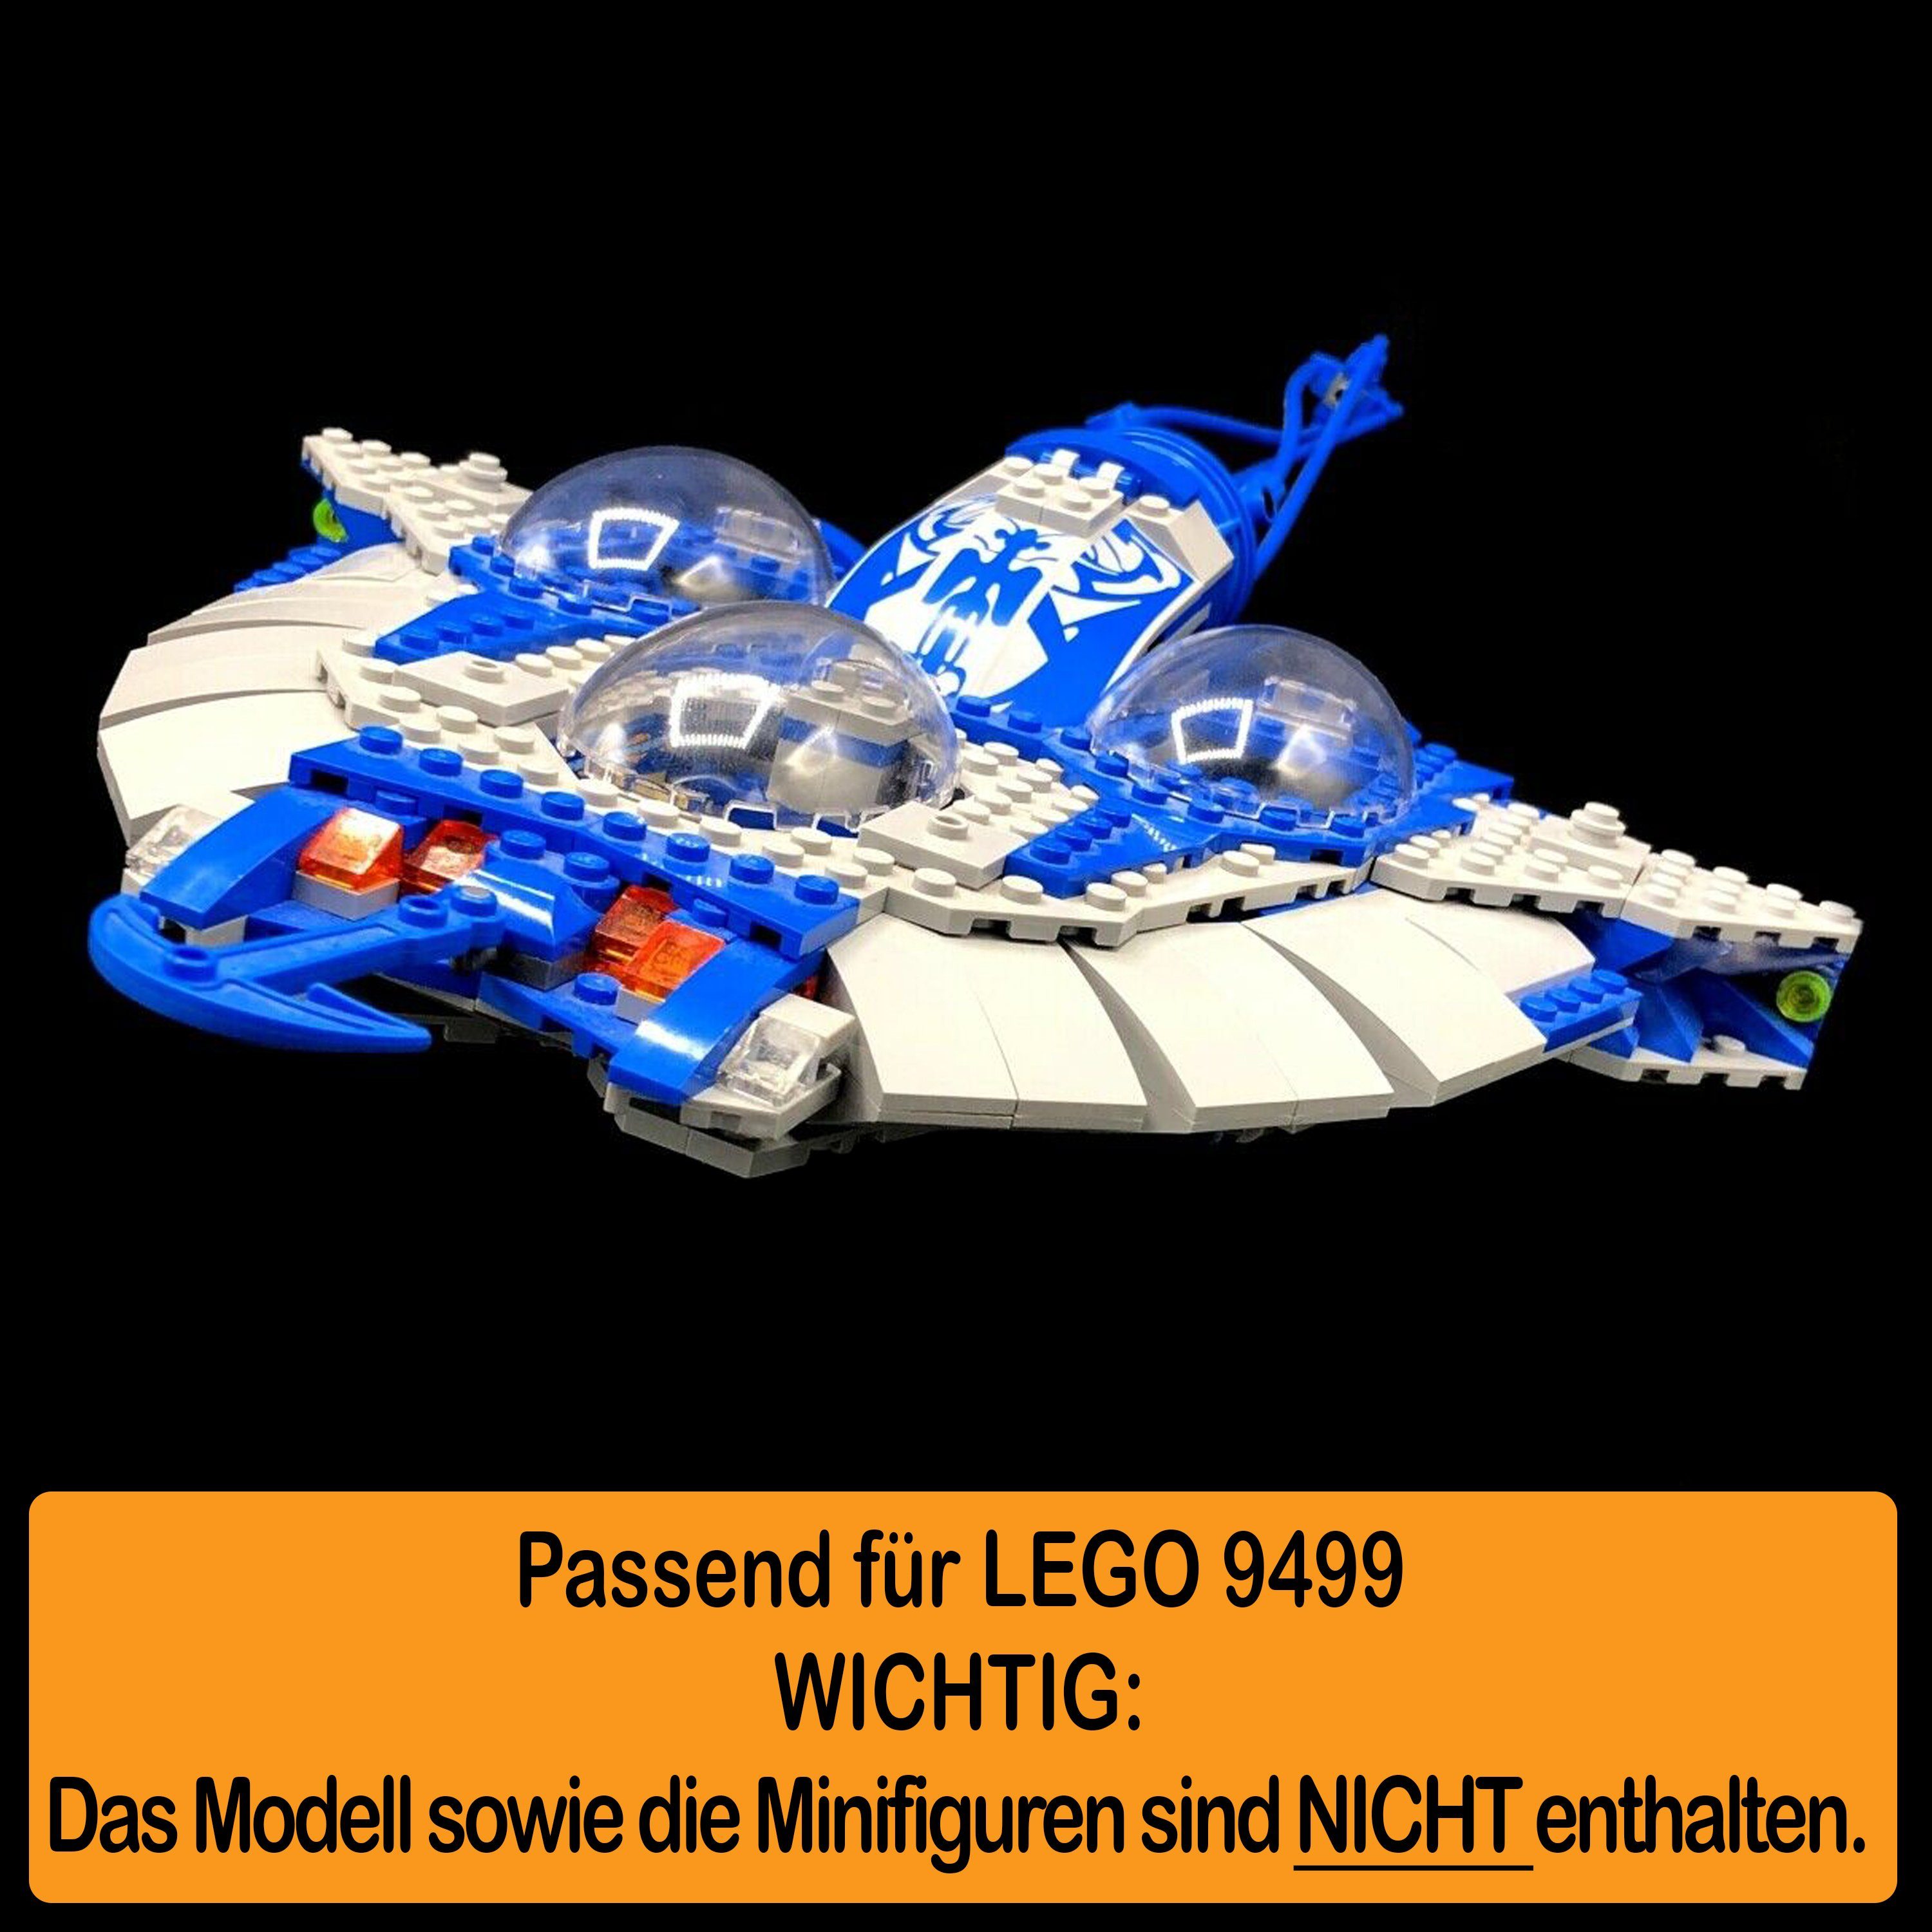 AREA17 Standfuß Acryl für in Gungan Germany Sub und Winkel Display (verschiedene einstellbar, 100% Made Stand Positionen zusammenbauen), 9499 zum LEGO selbst